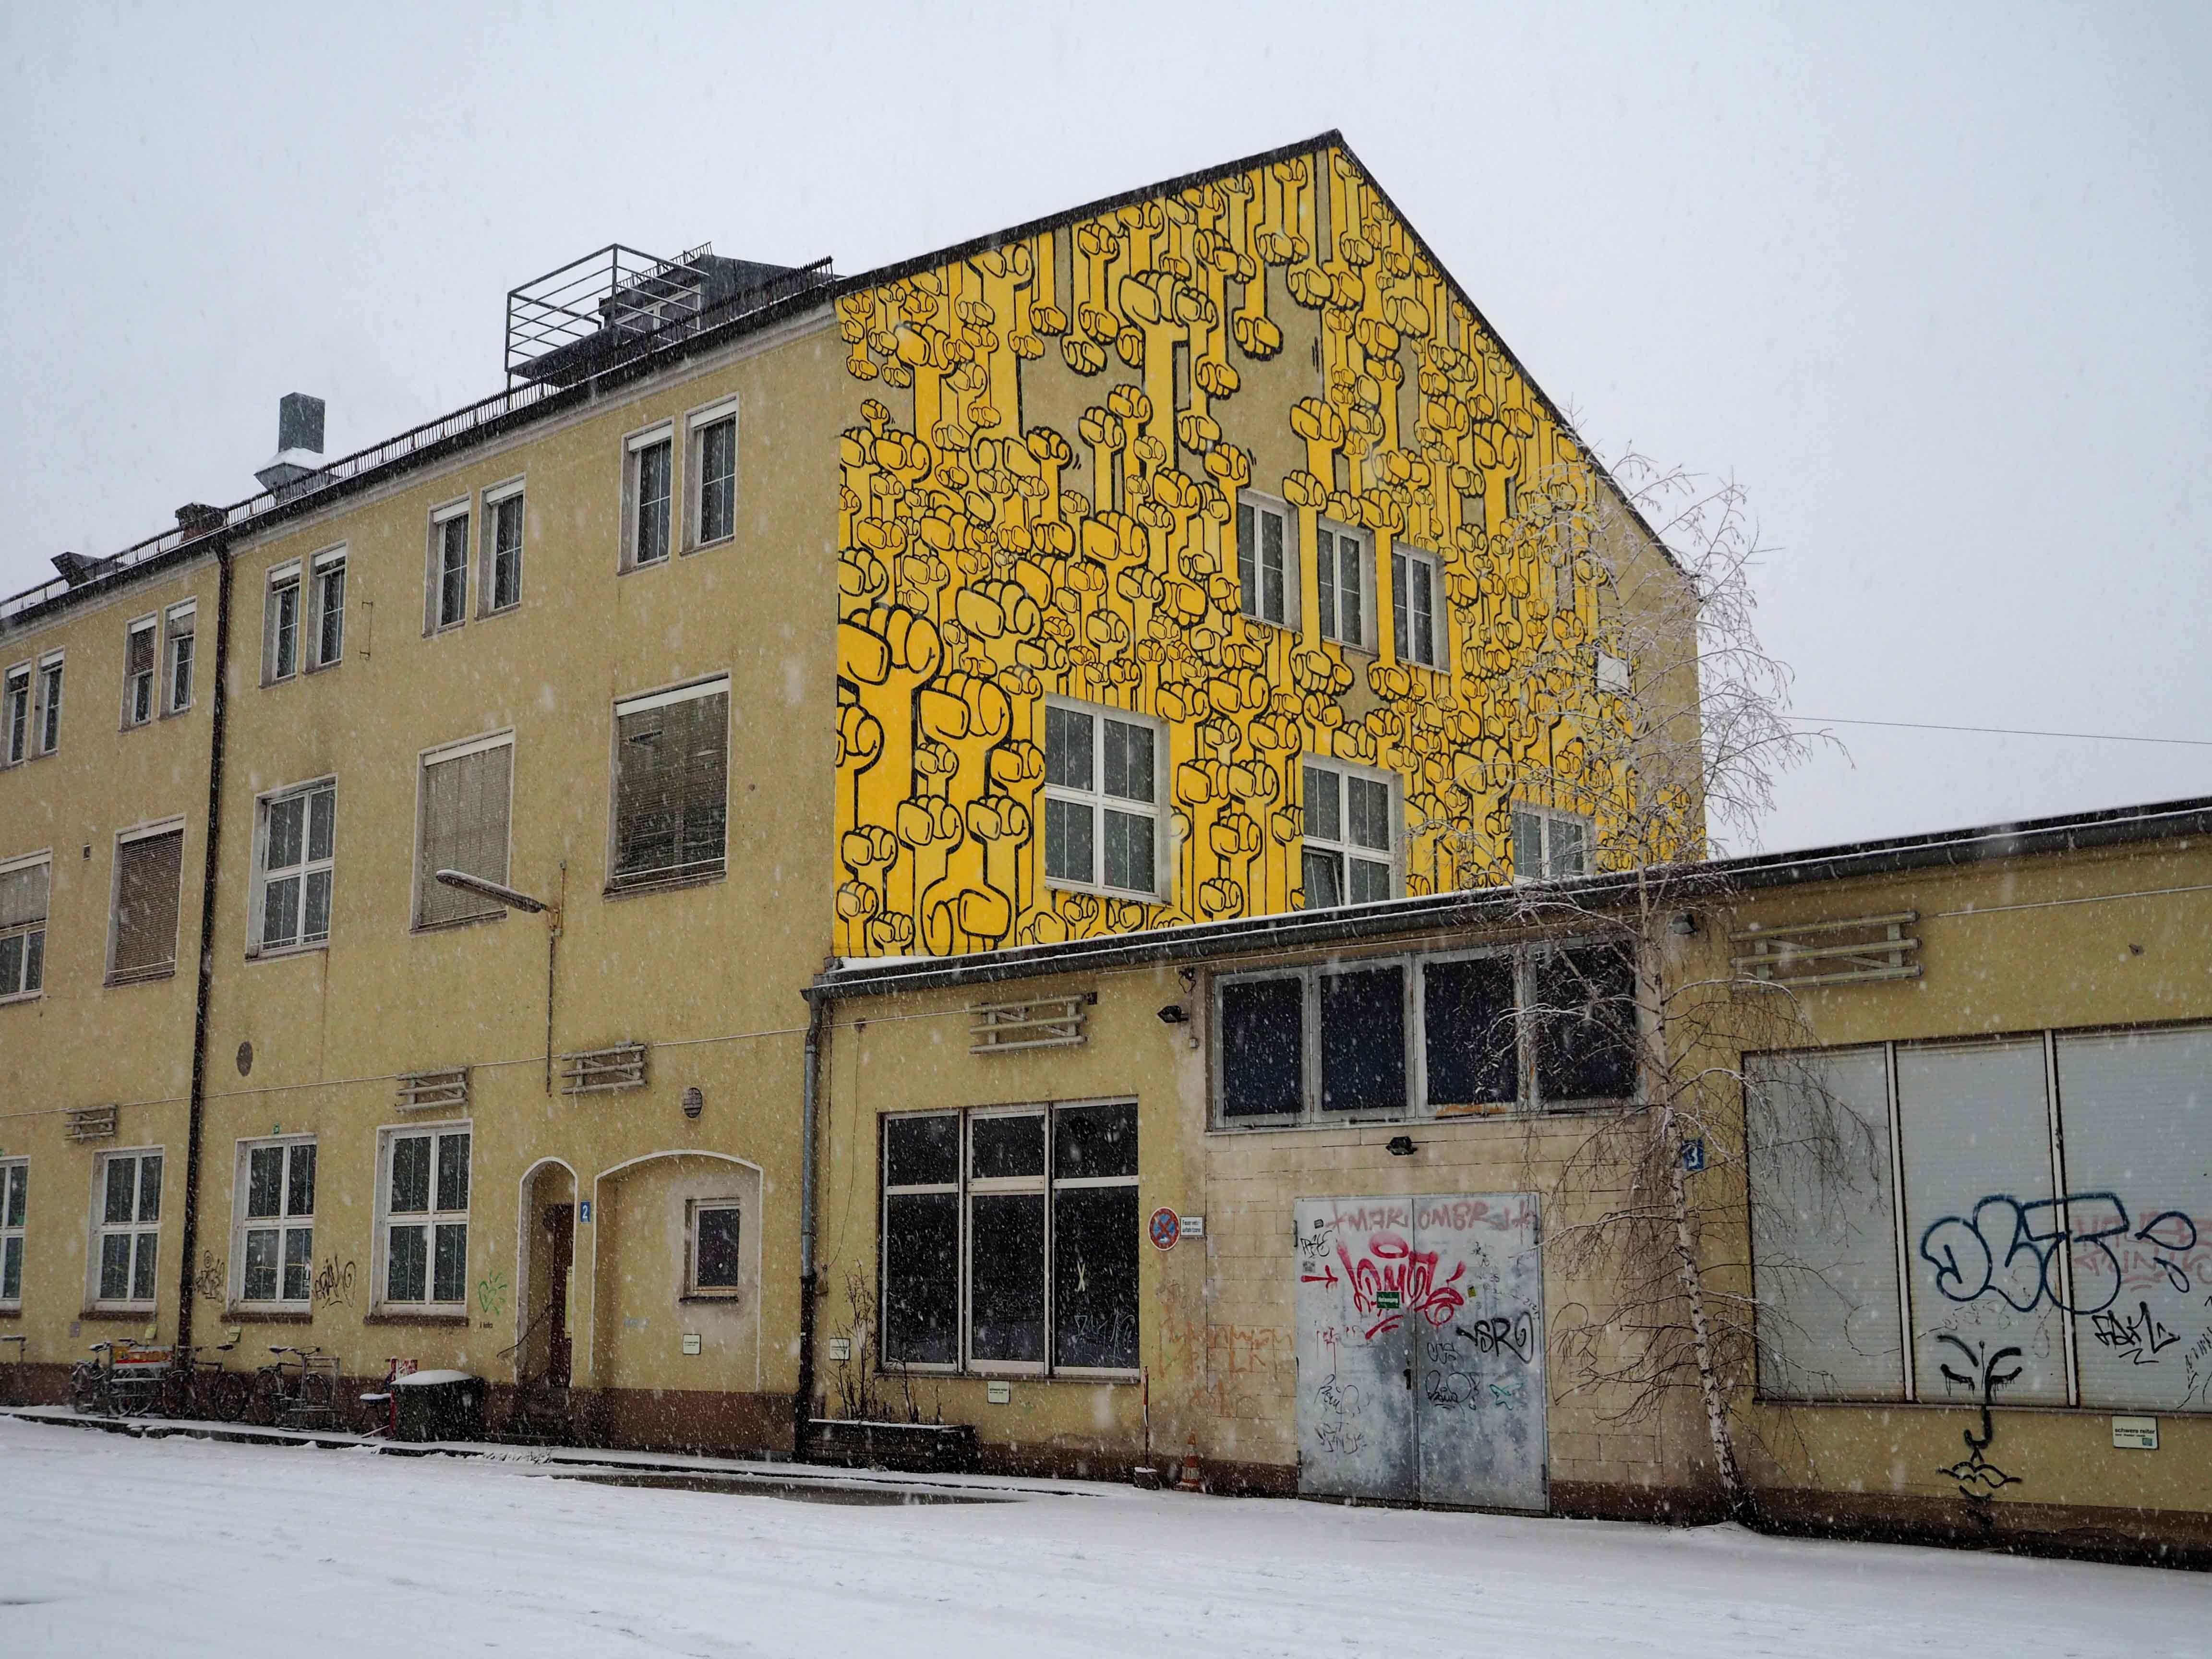 Das Mural von Kripoe zeigt lauter gelbe Fäuste die Für "Hände hoch für Waffenkontrolle" stehen